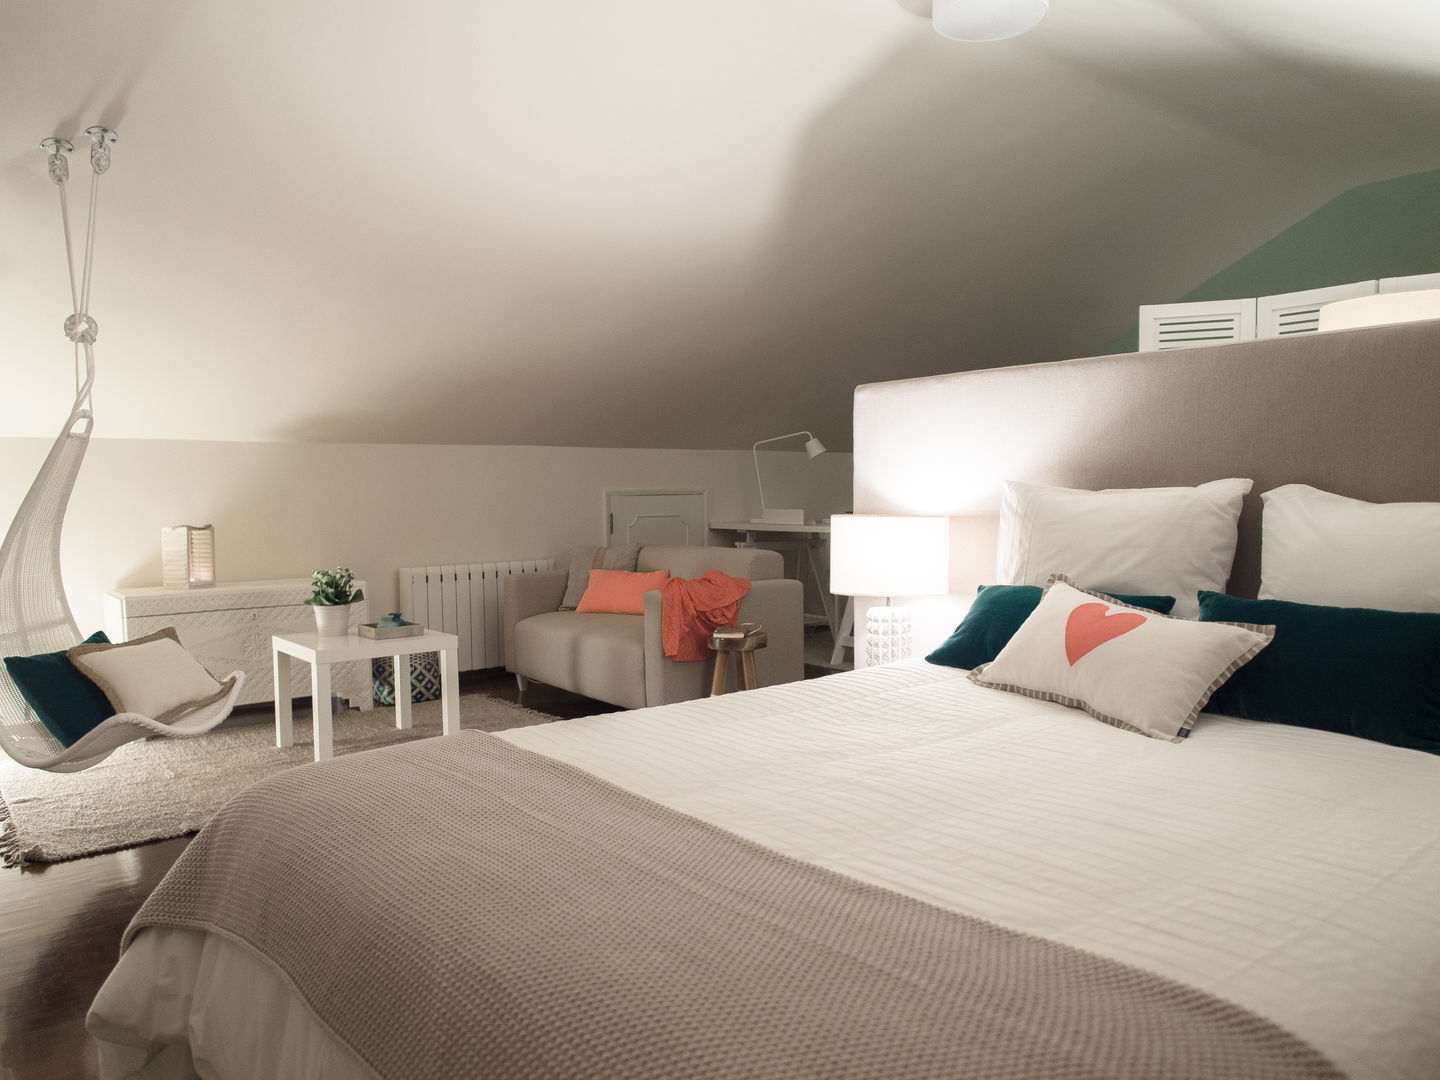 DP Bedroom - Sintra, MUDA Home Design MUDA Home Design 모던스타일 침실